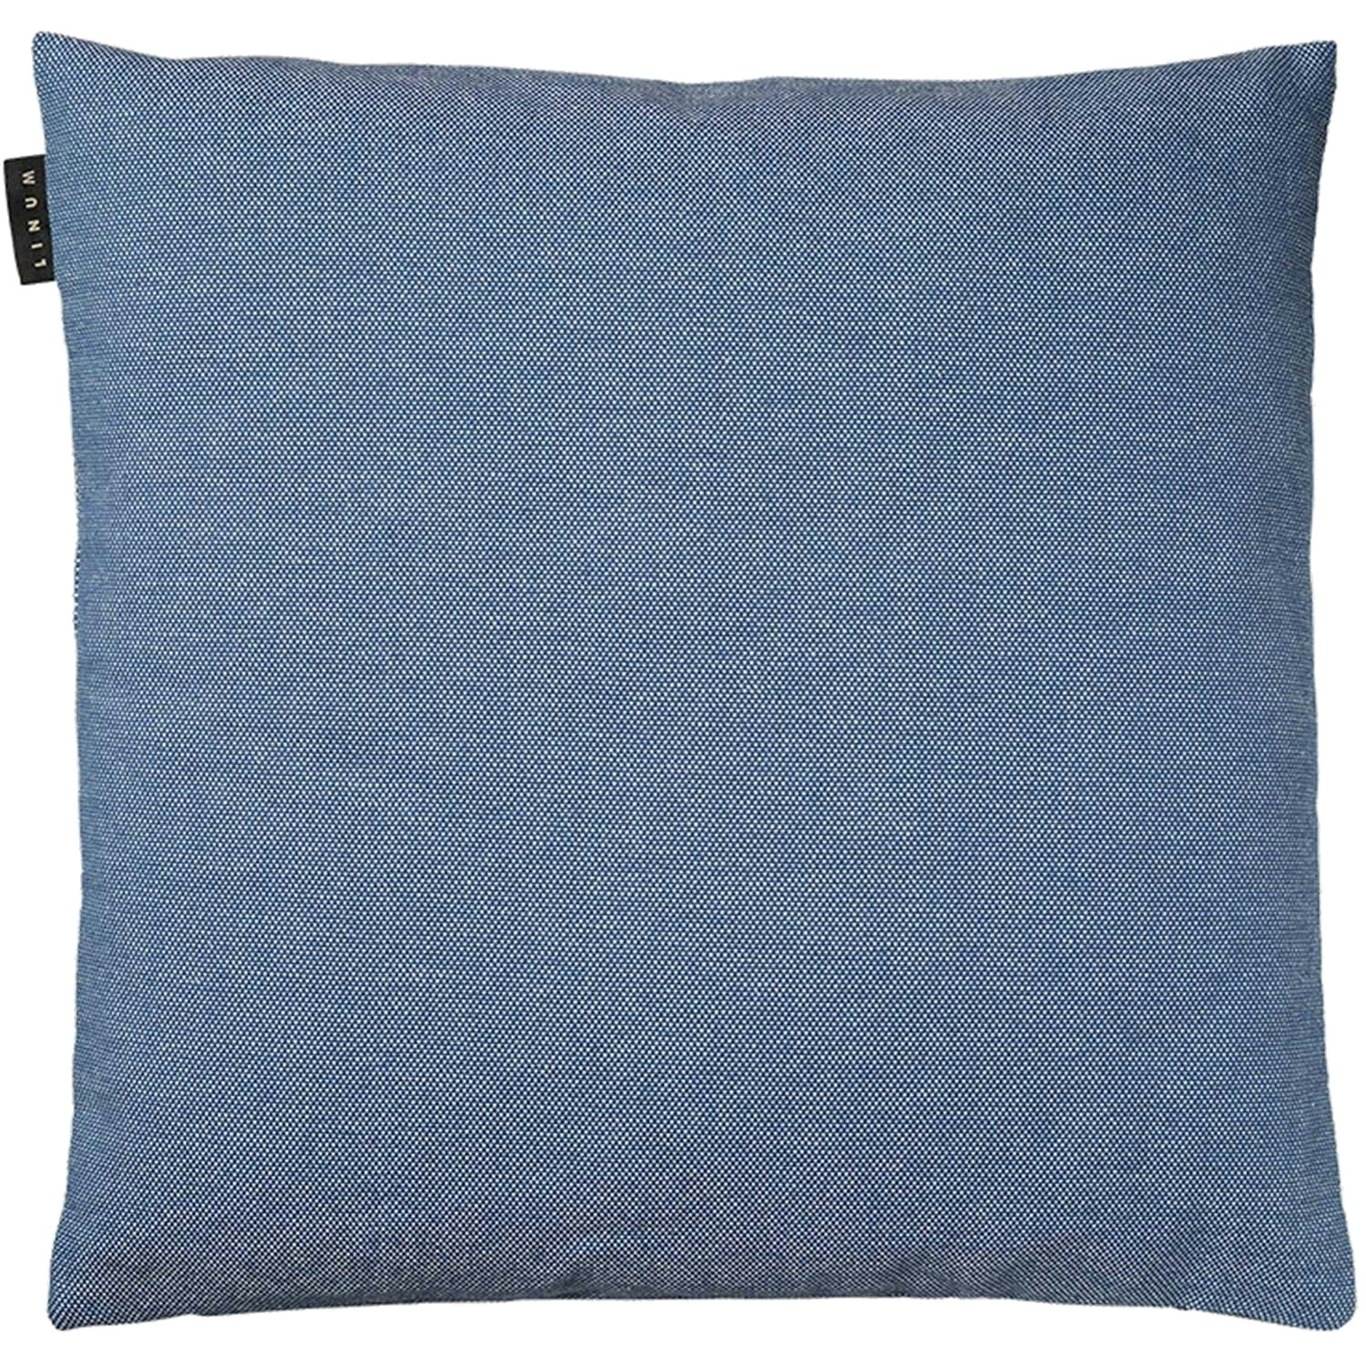 Pepper Cushion Cover 40x40 cm, Deep Sea Blue